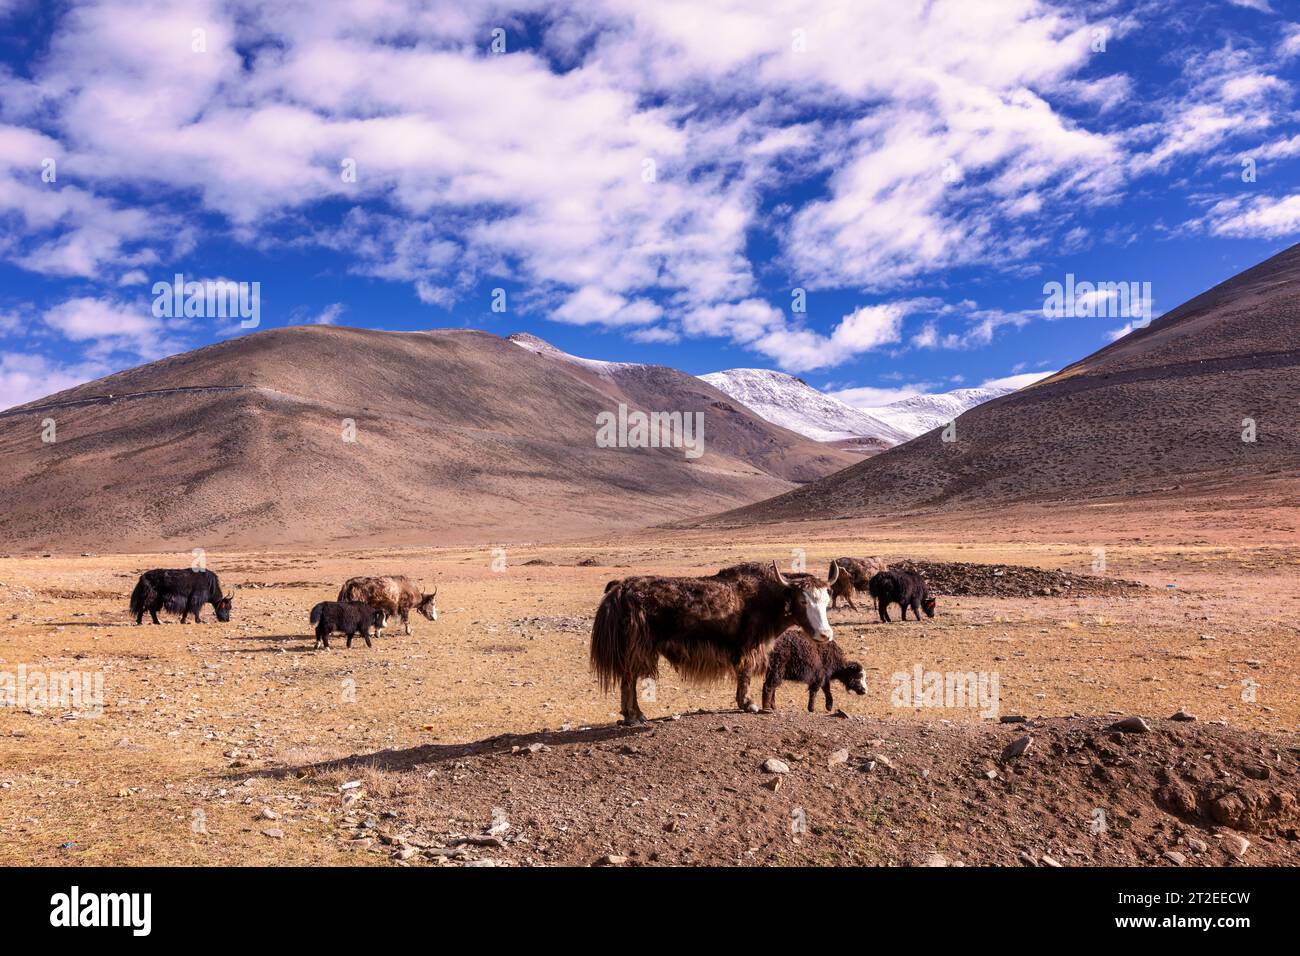 A large flock of domestic yaks, Ladakh, India Stock Photo